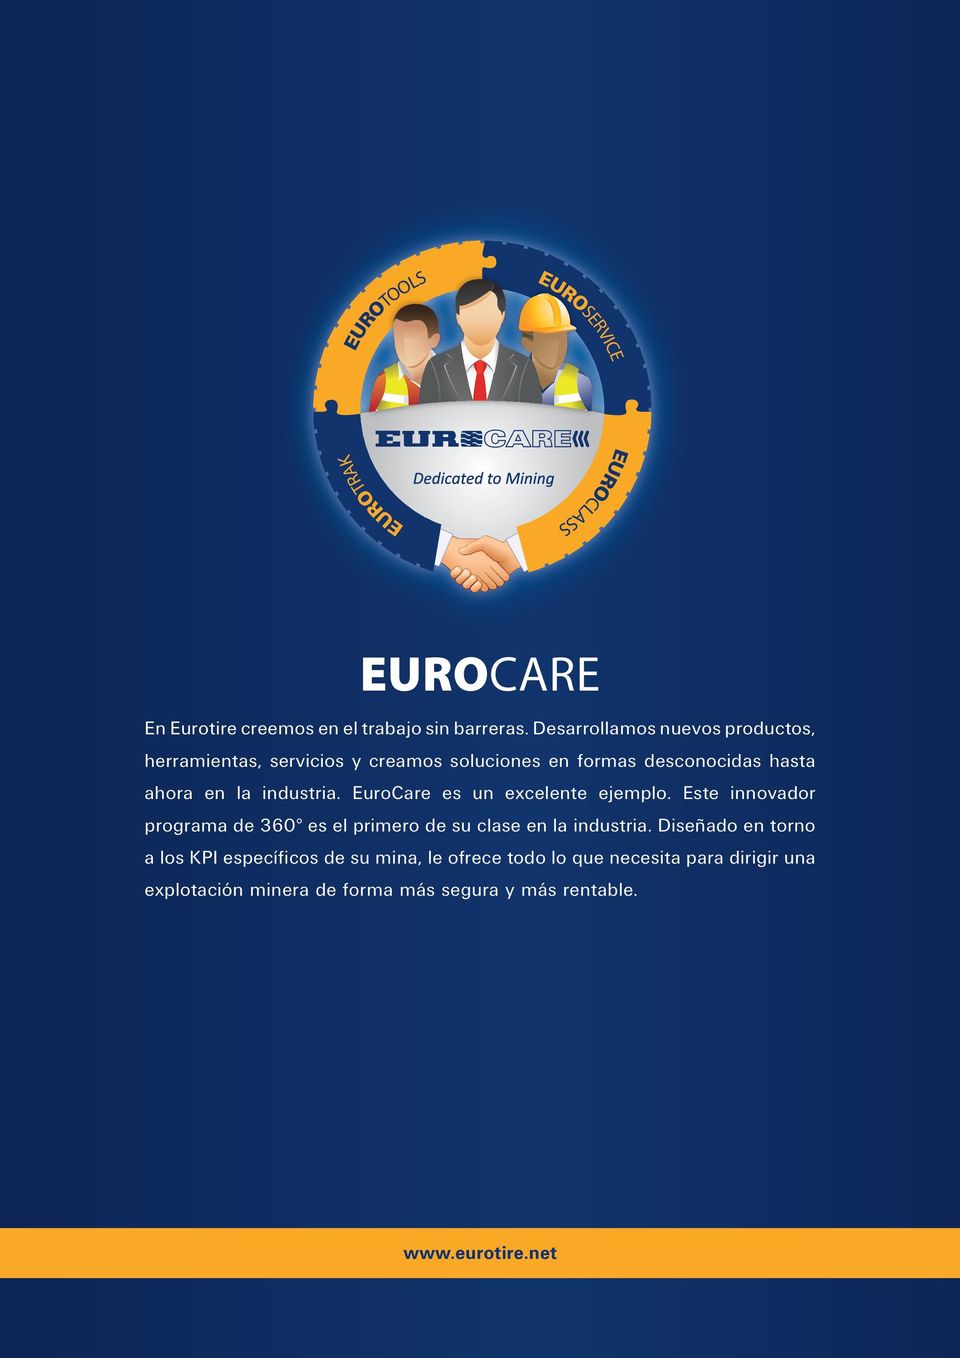 industria. EuroCare es un excelente ejemplo. Este innovador programa de 360 es el primero de su clase en la industria.